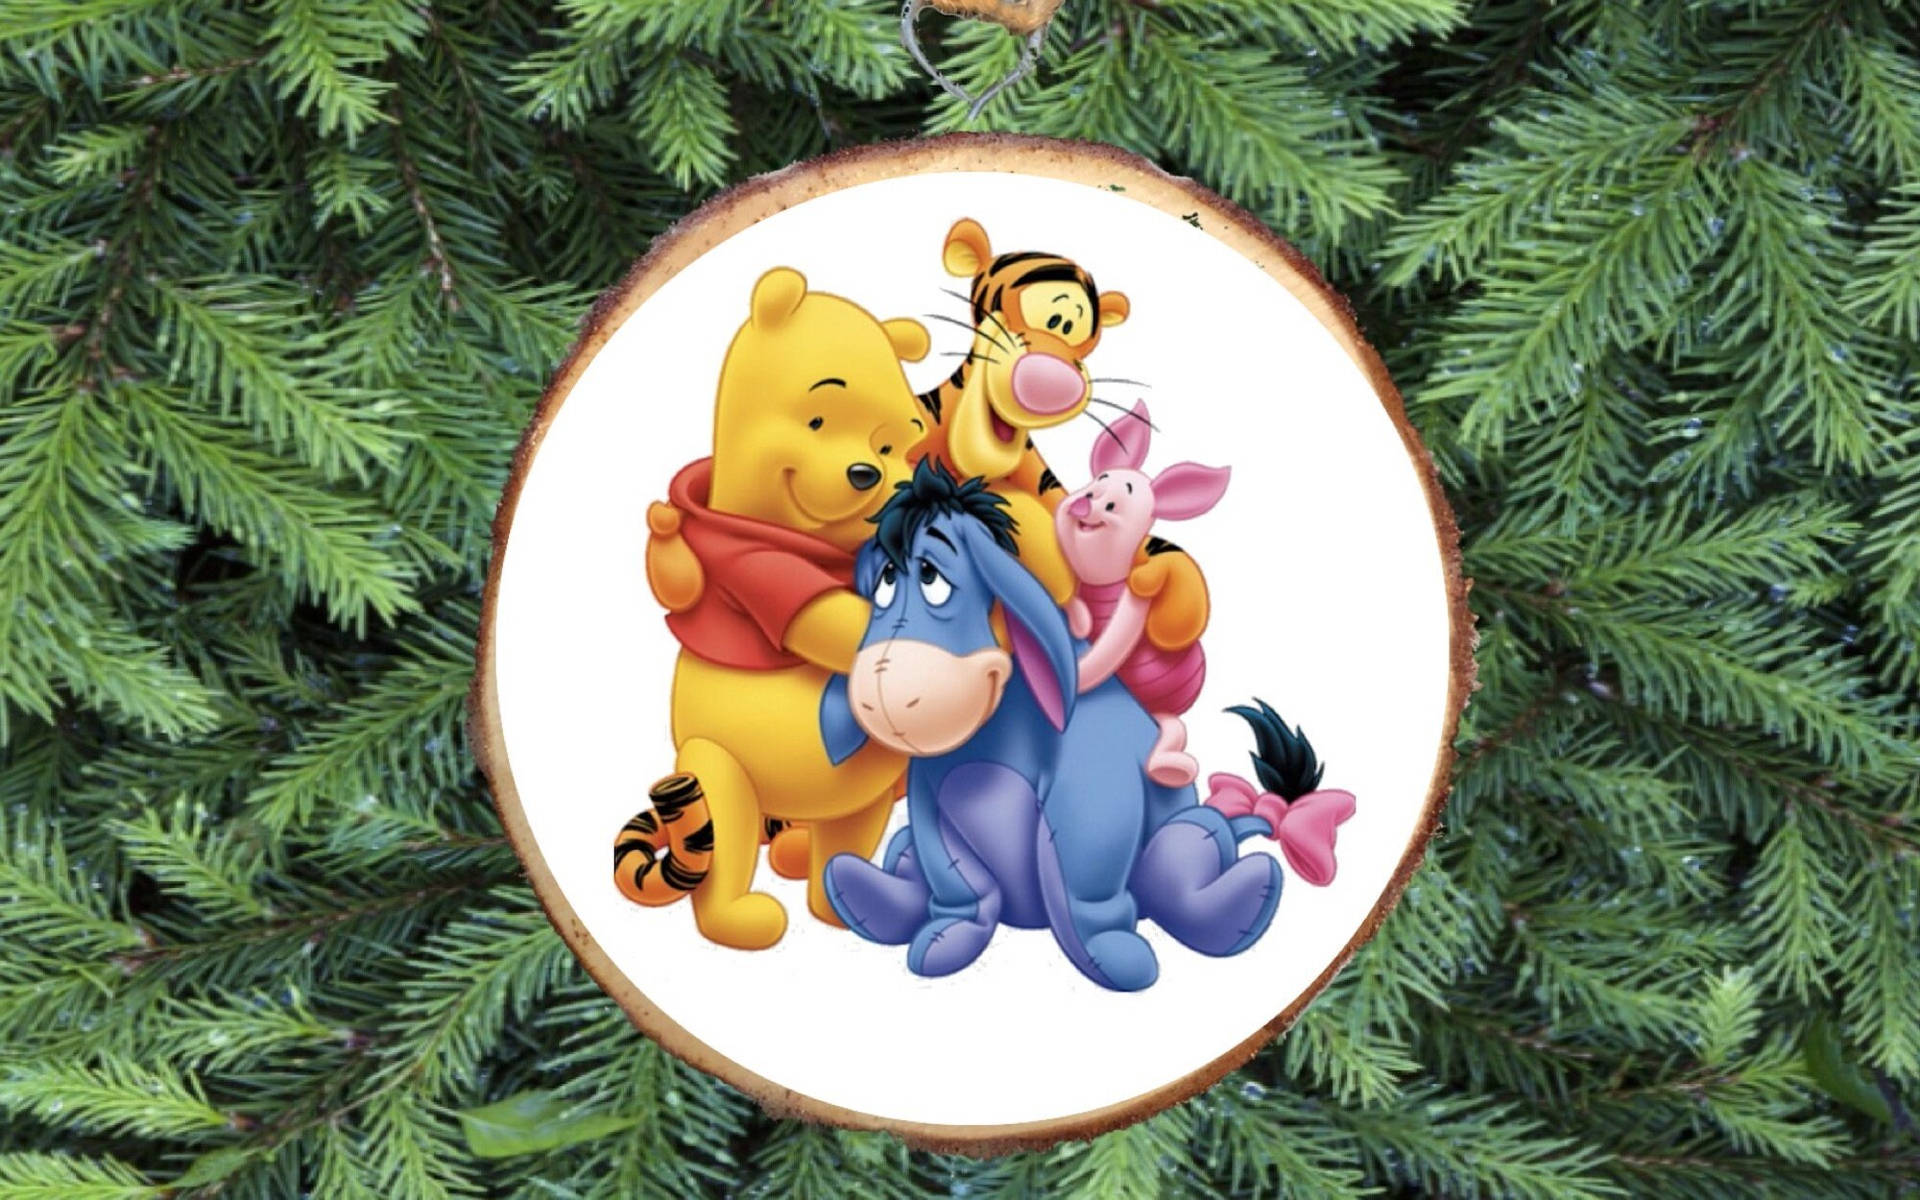 Spred julemoro og nyd julen med Winnie og hans venner! Wallpaper